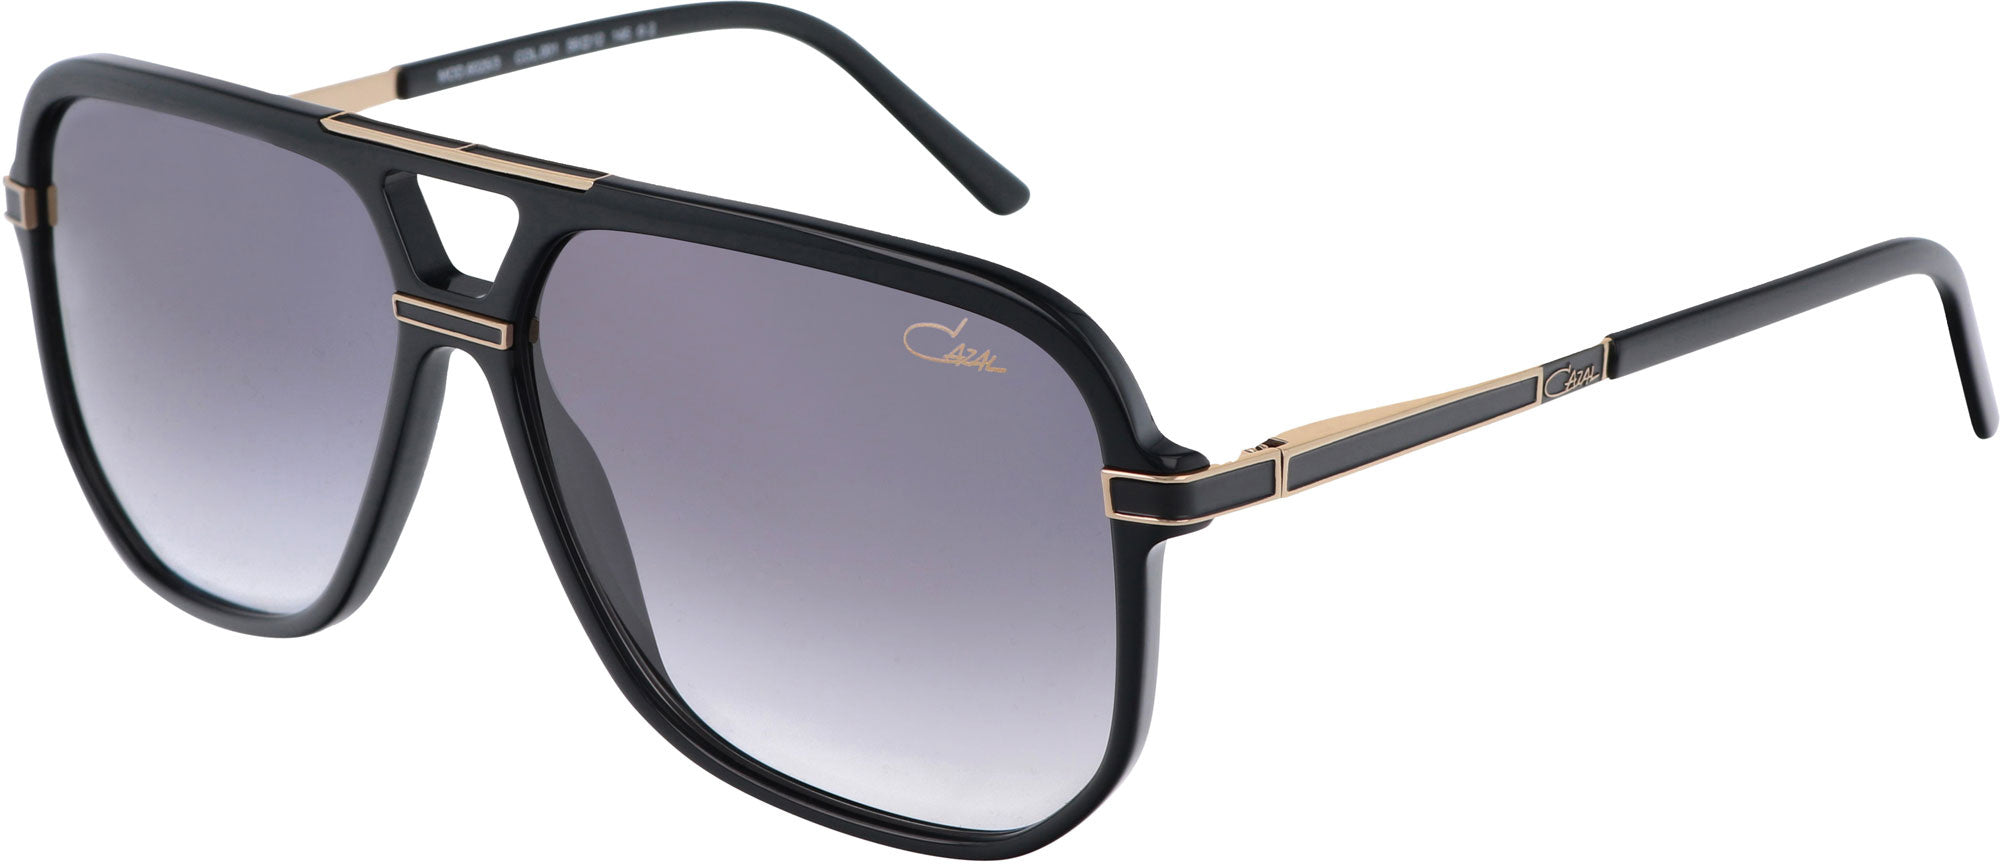 BEON.COM.AU COLOR:  001 BLACK-GOLD SIZE:  58/12 GLASS:  GREY GRADIENT Sunglasses CAZAL at BEON.COM.AU